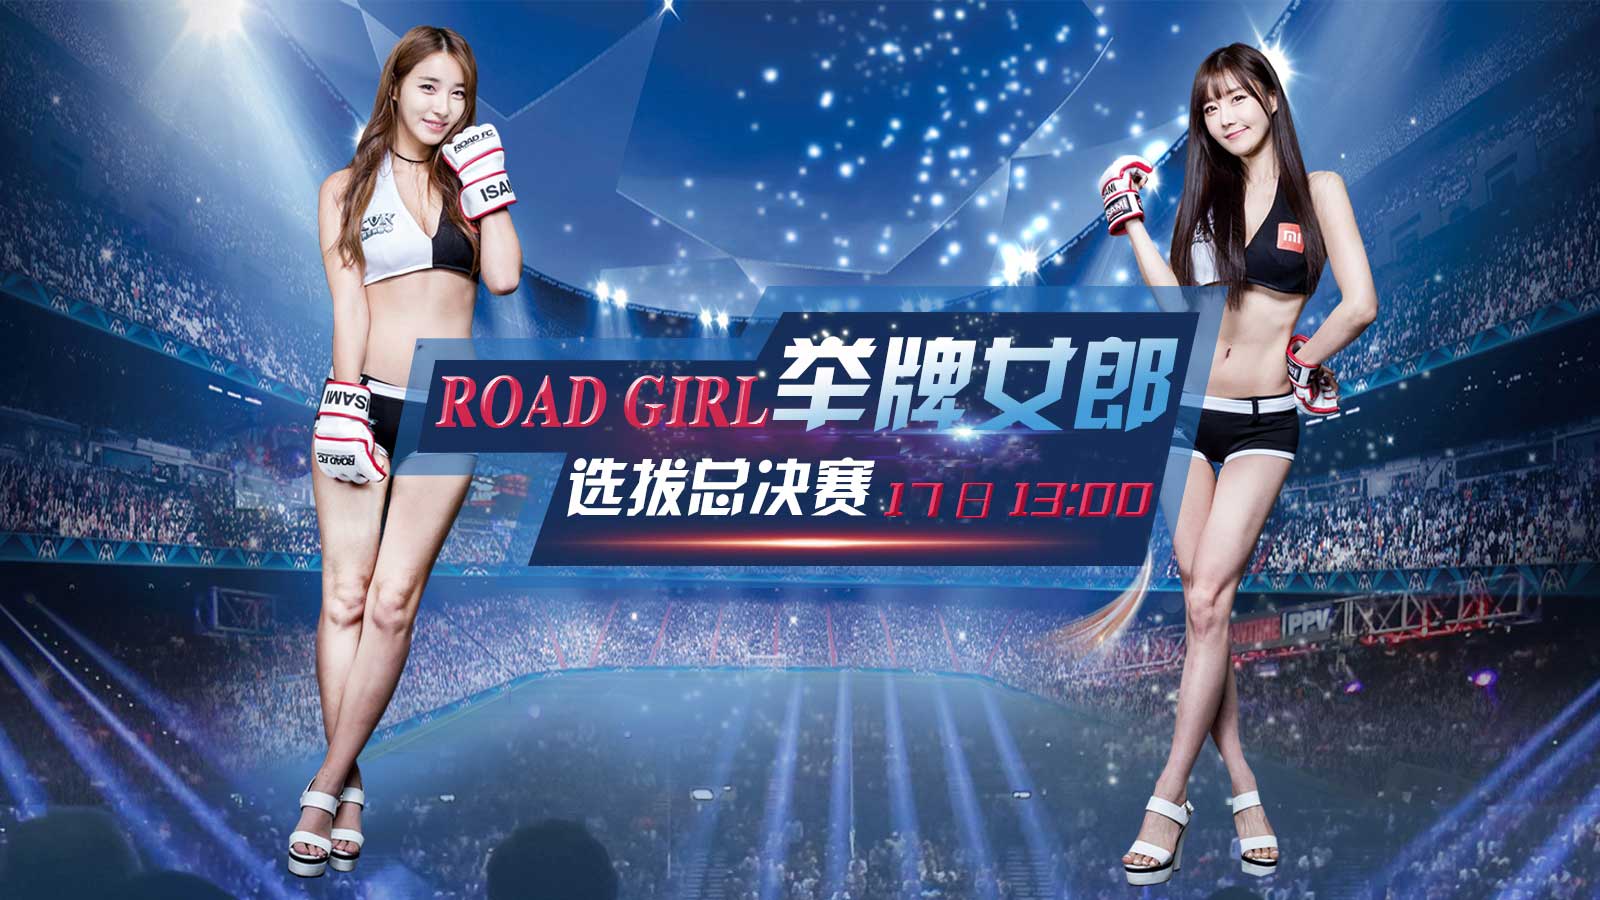 11月17日13:00 移動直播ROAD GIRL舉牌女郎選拔總決賽